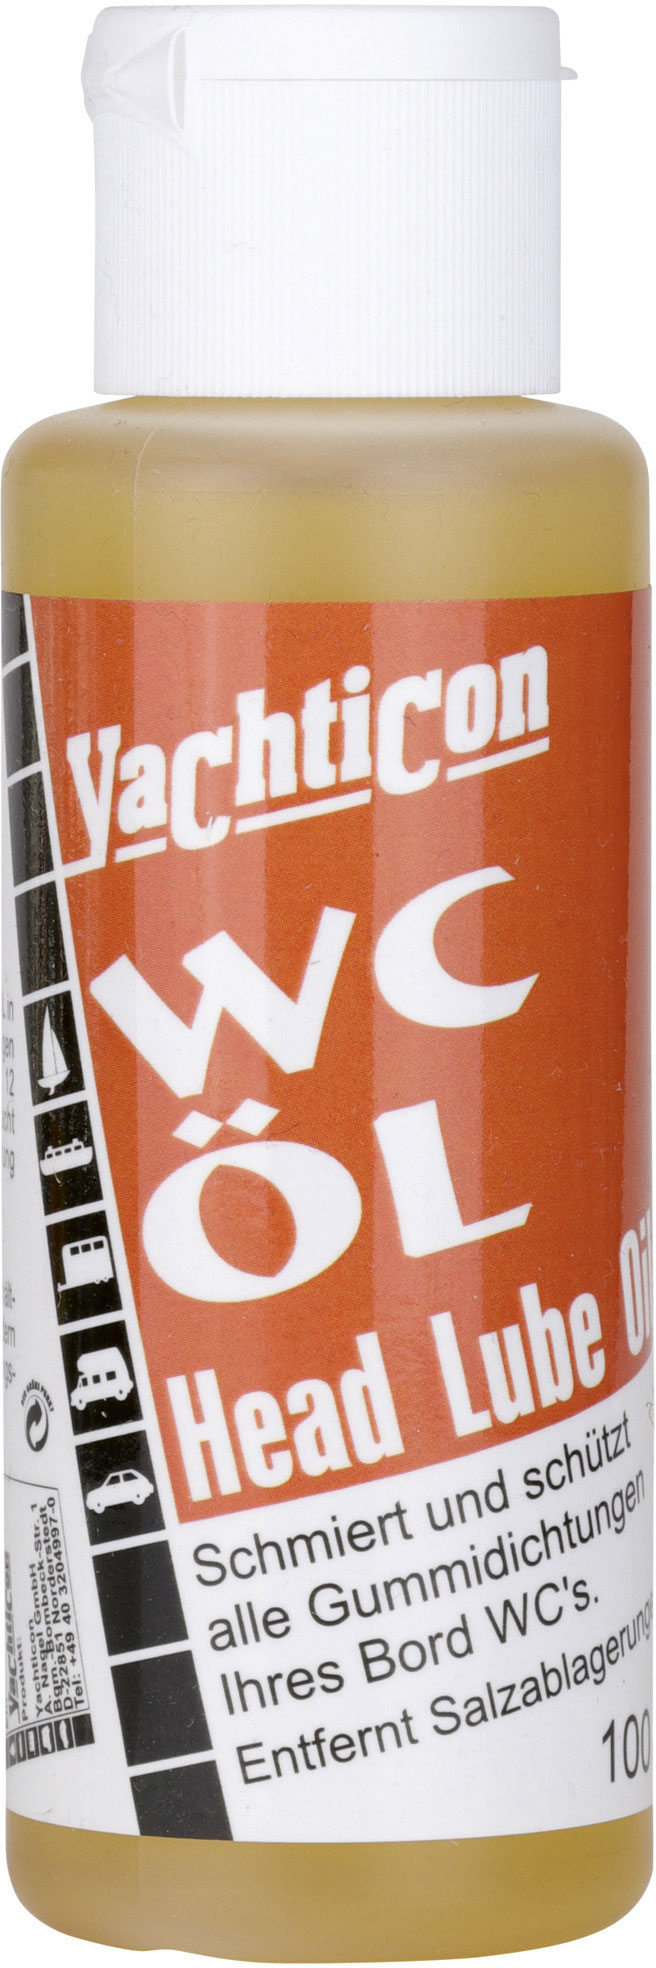 Yachticon WC ÖL, 100 ml